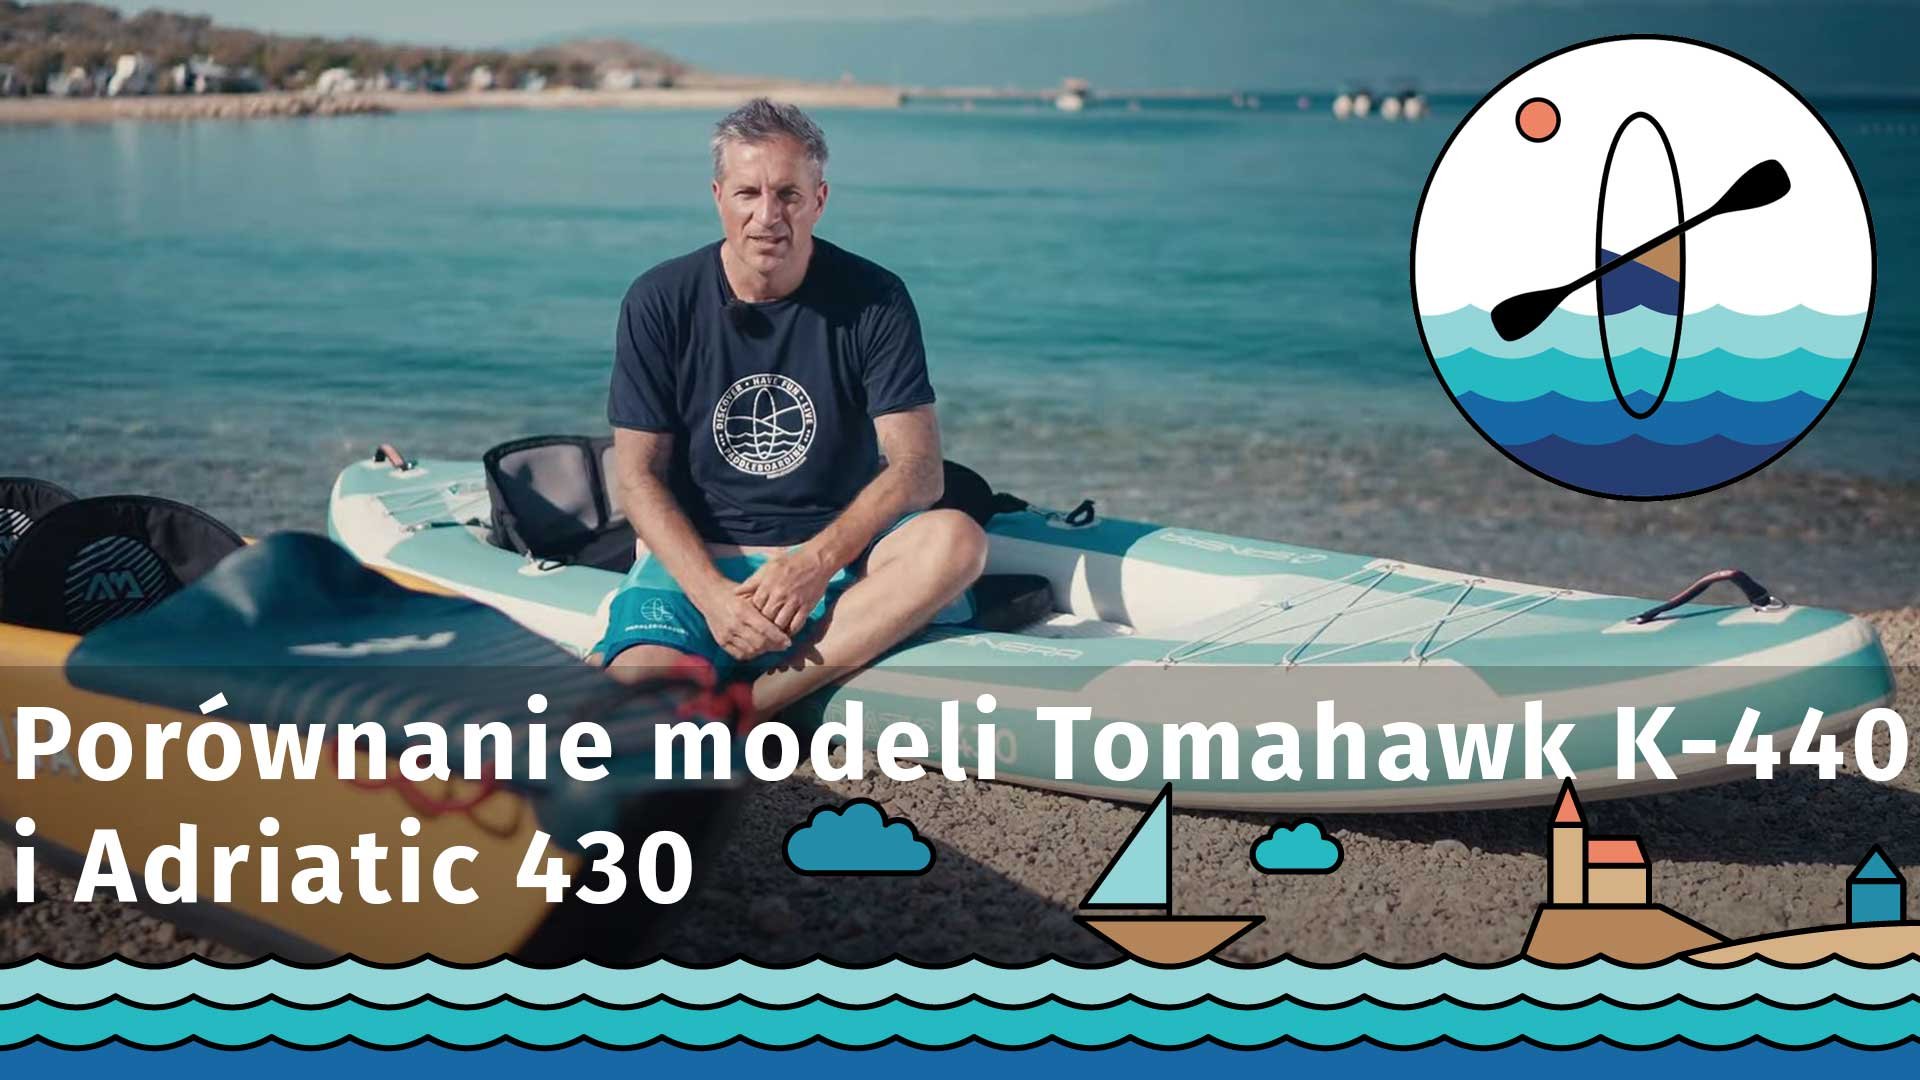 Porównanie modeli Aqua Marina Tomahawk 440 i Spinera Adriatic 430